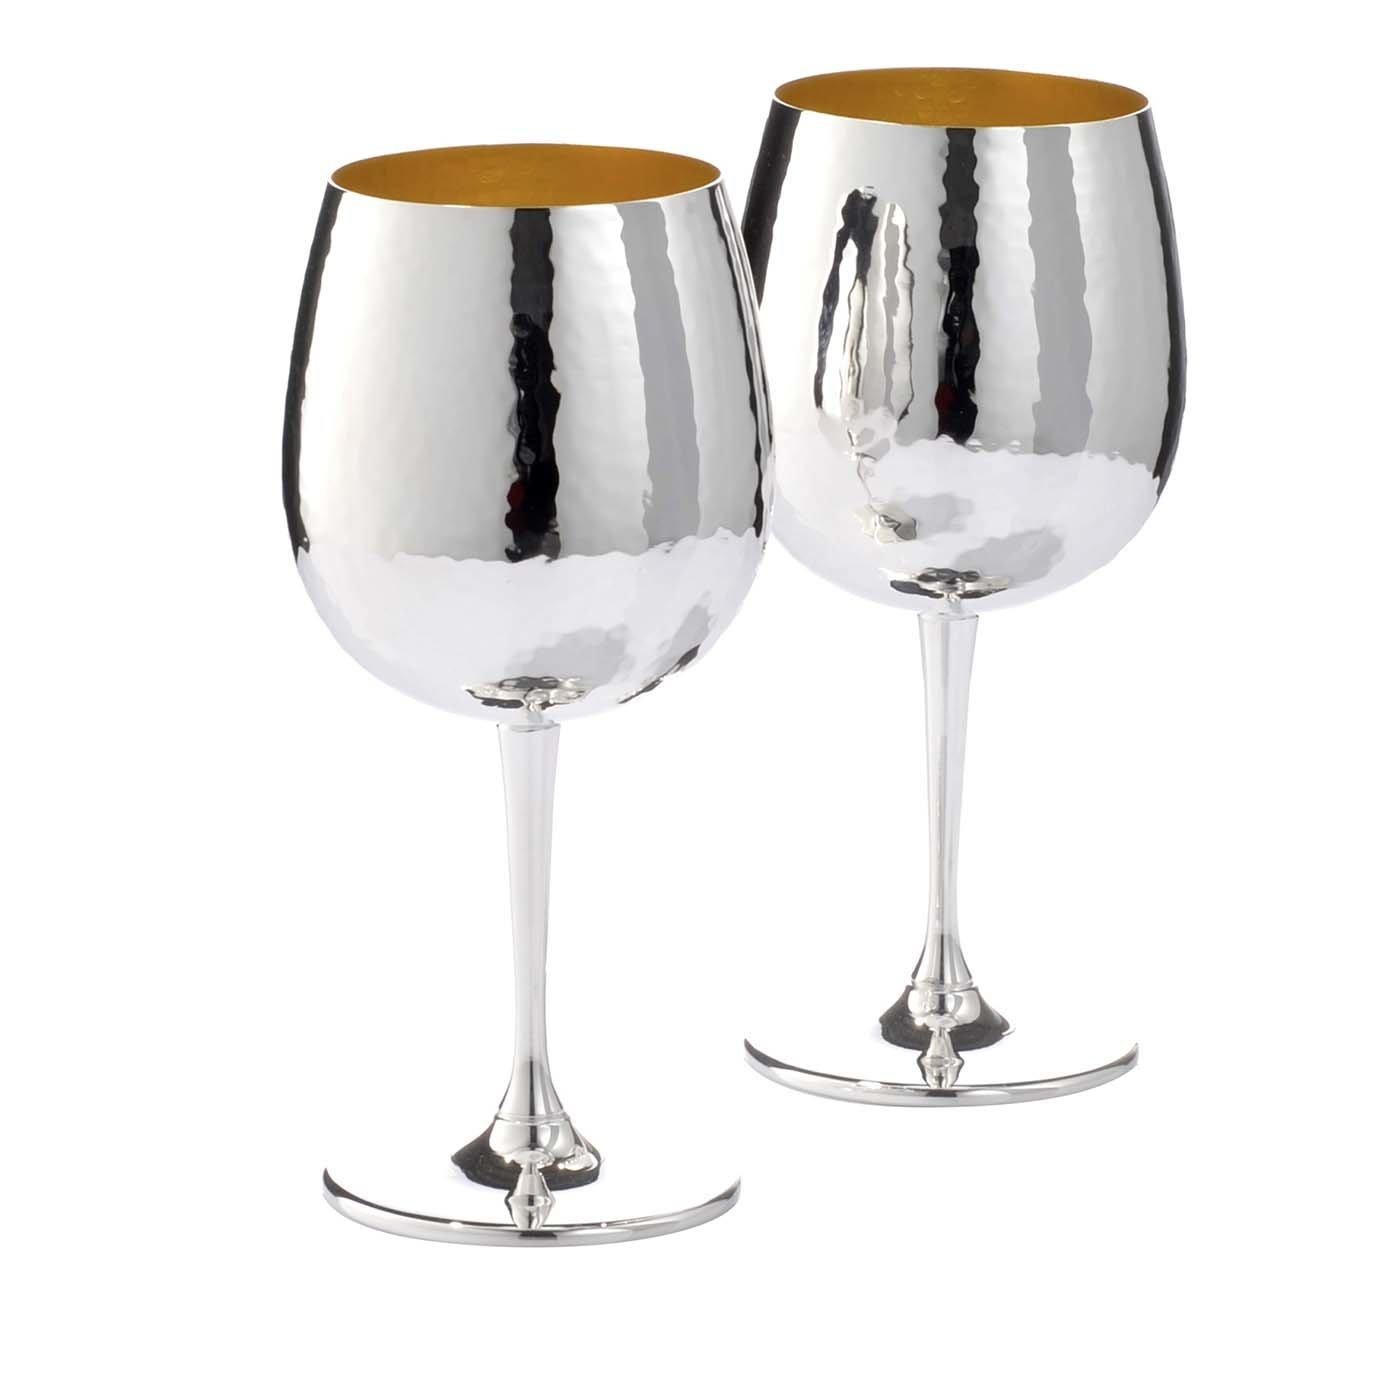 Cet ensemble sophistiqué de deux verres à vin rehaussera toute table à manger grâce à l'élégance chatoyante de l'argent et à une silhouette parfaitement équilibrée. Conçus pour les vins rouges, ces verres plaqués argent avec intérieur en or